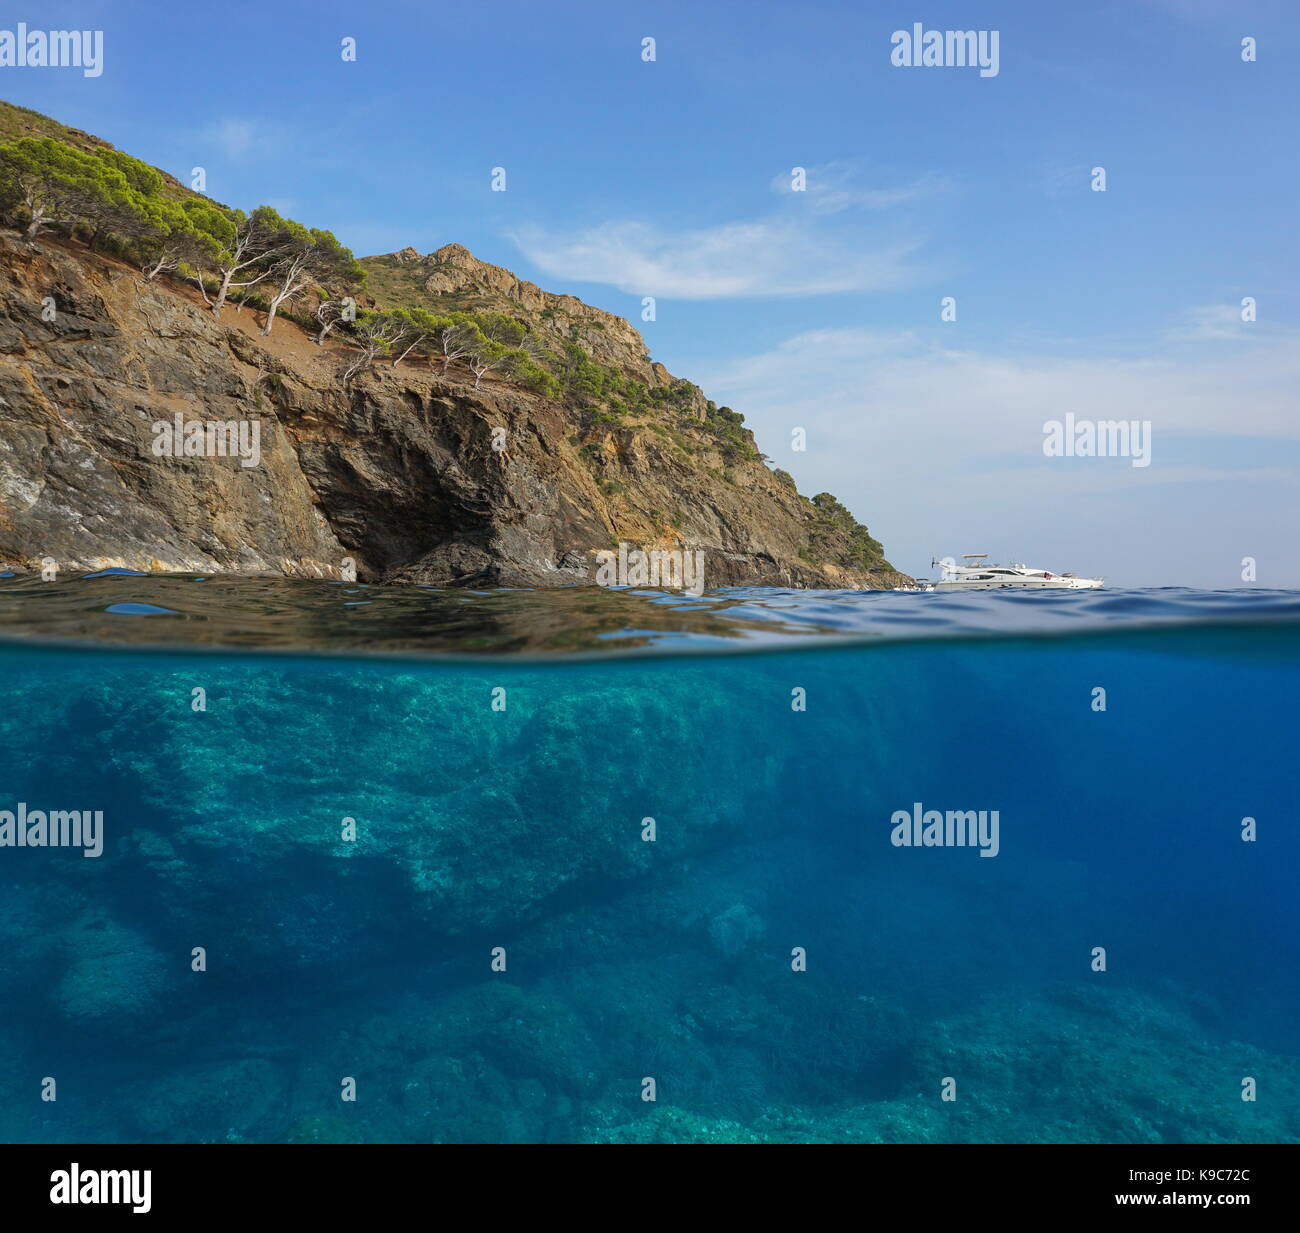 Al di sopra e al di sotto della superficie dell'acqua, cliff con rocce sottomarine, mare mediterraneo, cap norfeu, Costa Brava, Spagna, Cap de Creus, Girona, Catalogna Foto Stock